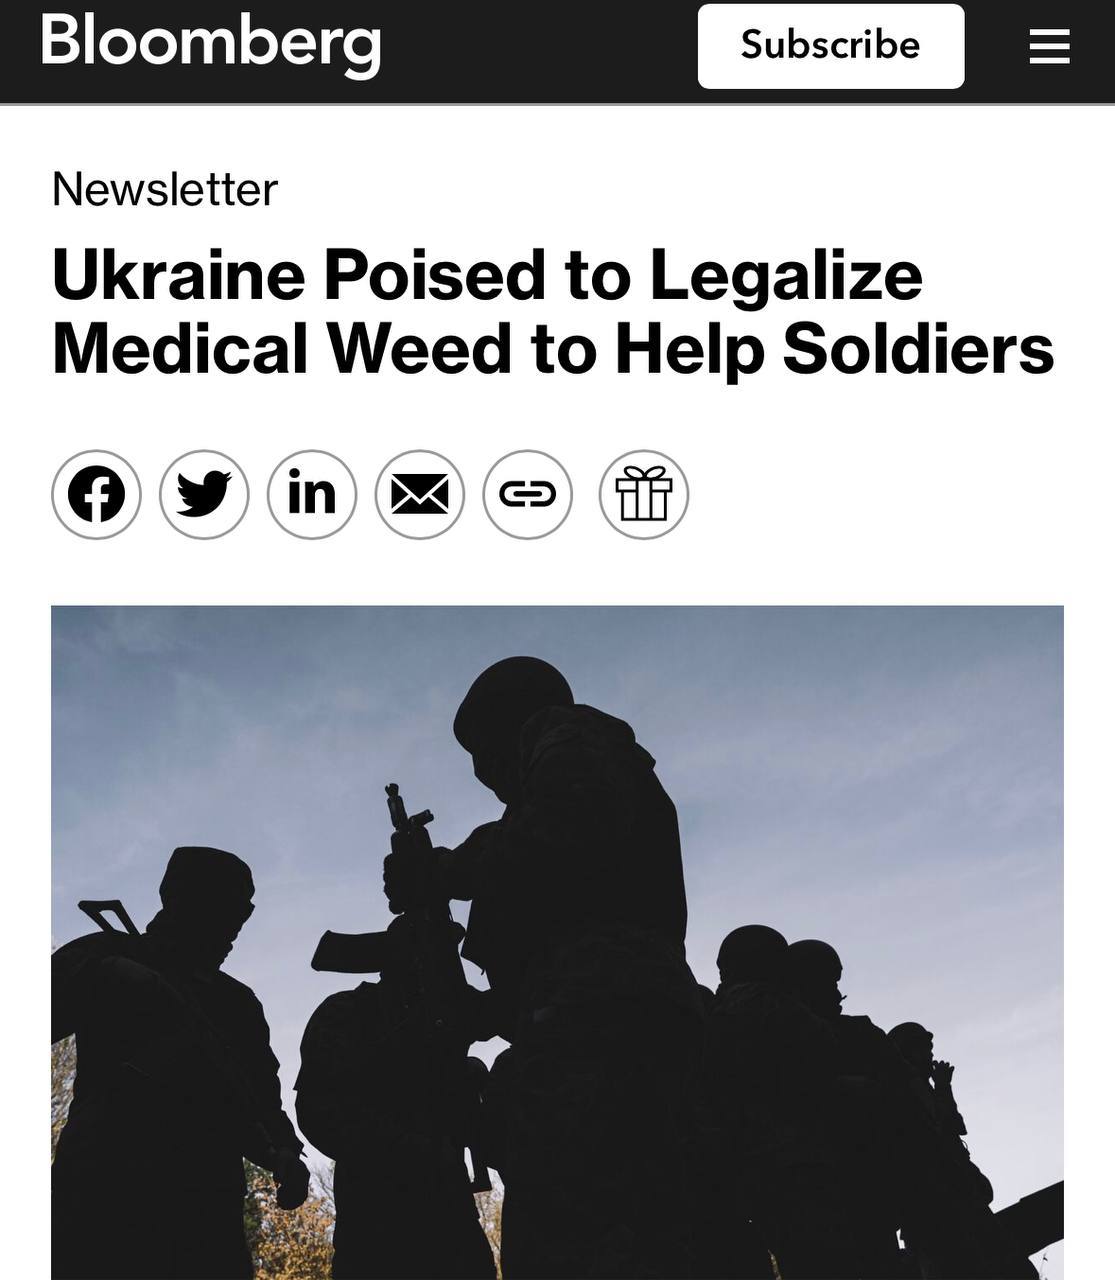 Україна готує легалізацію медичного канабісу у листопаді для допомоги солдатам з травмами та ПТСР, — Bloomberg